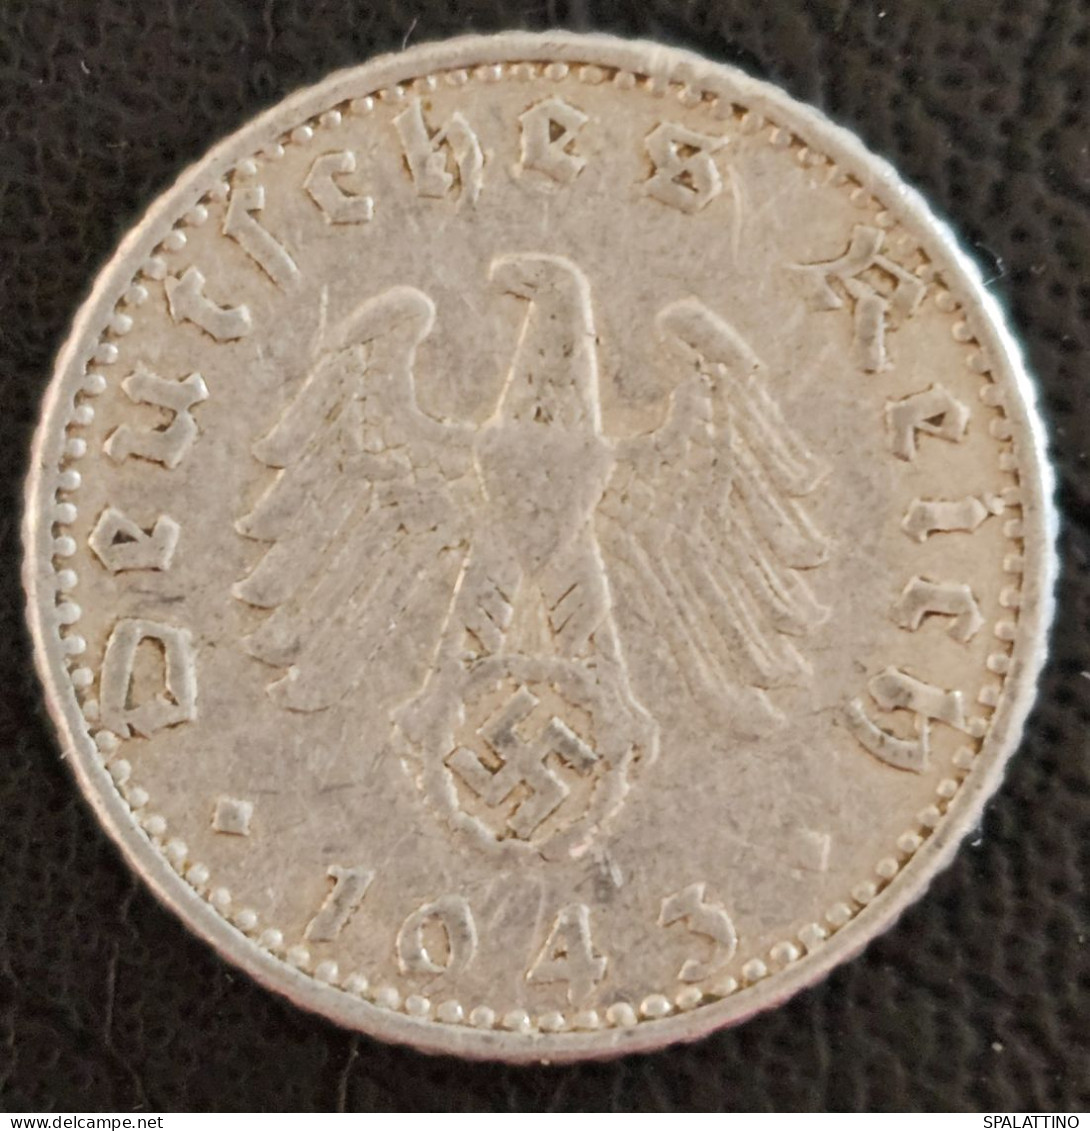 GERMANY- 50 REICHSPFENNIG 1943. A - 50 Reichspfennig